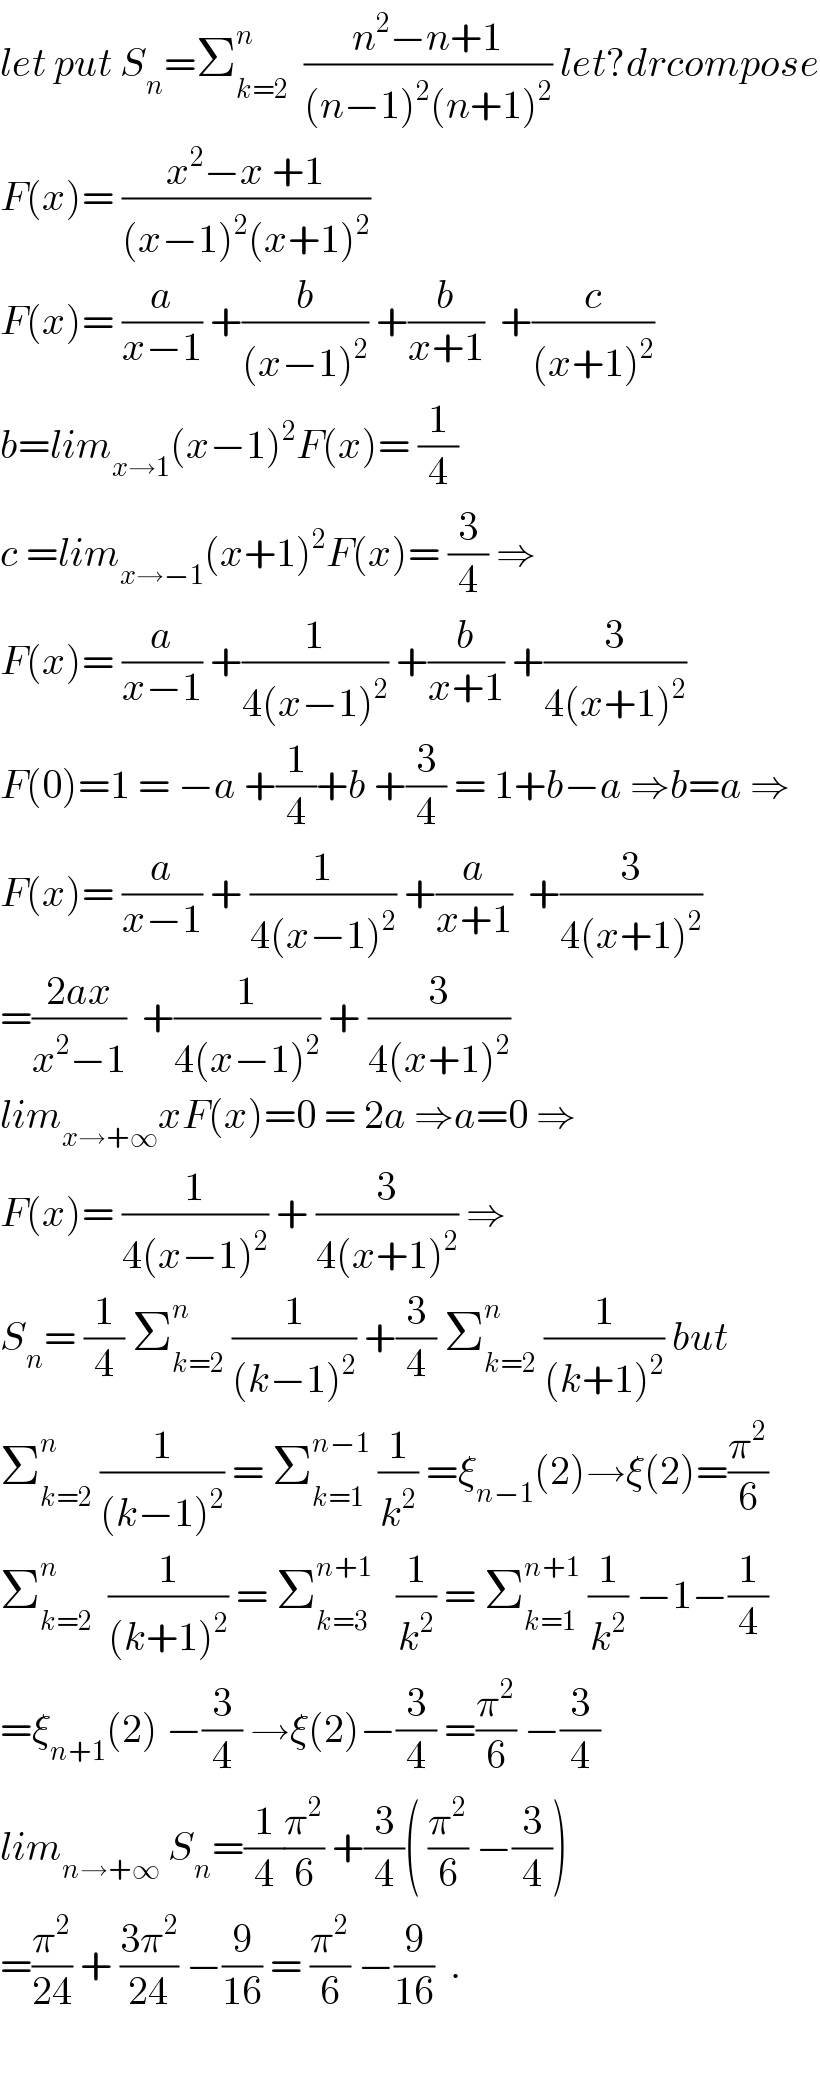 let put S_n =Σ_(k=2) ^n   ((n^2 −n+1)/((n−1)^2 (n+1)^2 )) let?drcompose  F(x)= ((x^2 −x +1)/((x−1)^2 (x+1)^2 ))  F(x)= (a/(x−1)) +(b/((x−1)^2 )) +(b/(x+1))  +(c/((x+1)^2 ))  b=lim_(x→1) (x−1)^2 F(x)= (1/4)  c =lim_(x→−1) (x+1)^2 F(x)= (3/4) ⇒  F(x)= (a/(x−1)) +(1/(4(x−1)^2 )) +(b/(x+1)) +(3/(4(x+1)^2 ))  F(0)=1 = −a +(1/4)+b +(3/4) = 1+b−a ⇒b=a ⇒  F(x)= (a/(x−1)) + (1/(4(x−1)^2 )) +(a/(x+1))  +(3/(4(x+1)^2 ))  =((2ax)/(x^2 −1))  +(1/(4(x−1)^2 )) + (3/(4(x+1)^2 ))  lim_(x→+∞) xF(x)=0 = 2a ⇒a=0 ⇒  F(x)= (1/(4(x−1)^2 )) + (3/(4(x+1)^2 )) ⇒  S_n = (1/4) Σ_(k=2) ^n  (1/((k−1)^2 )) +(3/4) Σ_(k=2) ^n  (1/((k+1)^2 )) but  Σ_(k=2) ^n  (1/((k−1)^2 )) = Σ_(k=1) ^(n−1)  (1/k^2 ) =ξ_(n−1) (2)→ξ(2)=(π^2 /6)  Σ_(k=2) ^n   (1/((k+1)^2 )) = Σ_(k=3) ^(n+1)    (1/k^2 ) = Σ_(k=1) ^(n+1)  (1/k^2 ) −1−(1/4)  =ξ_(n+1) (2) −(3/4) →ξ(2)−(3/4) =(π^2 /6) −(3/4)  lim_(n→+∞)  S_n =(1/4)(π^2 /6) +(3/4)( (π^2 /6) −(3/4))  =(π^2 /(24)) + ((3π^2 )/(24)) −(9/(16)) = (π^2 /6) −(9/(16))  .    